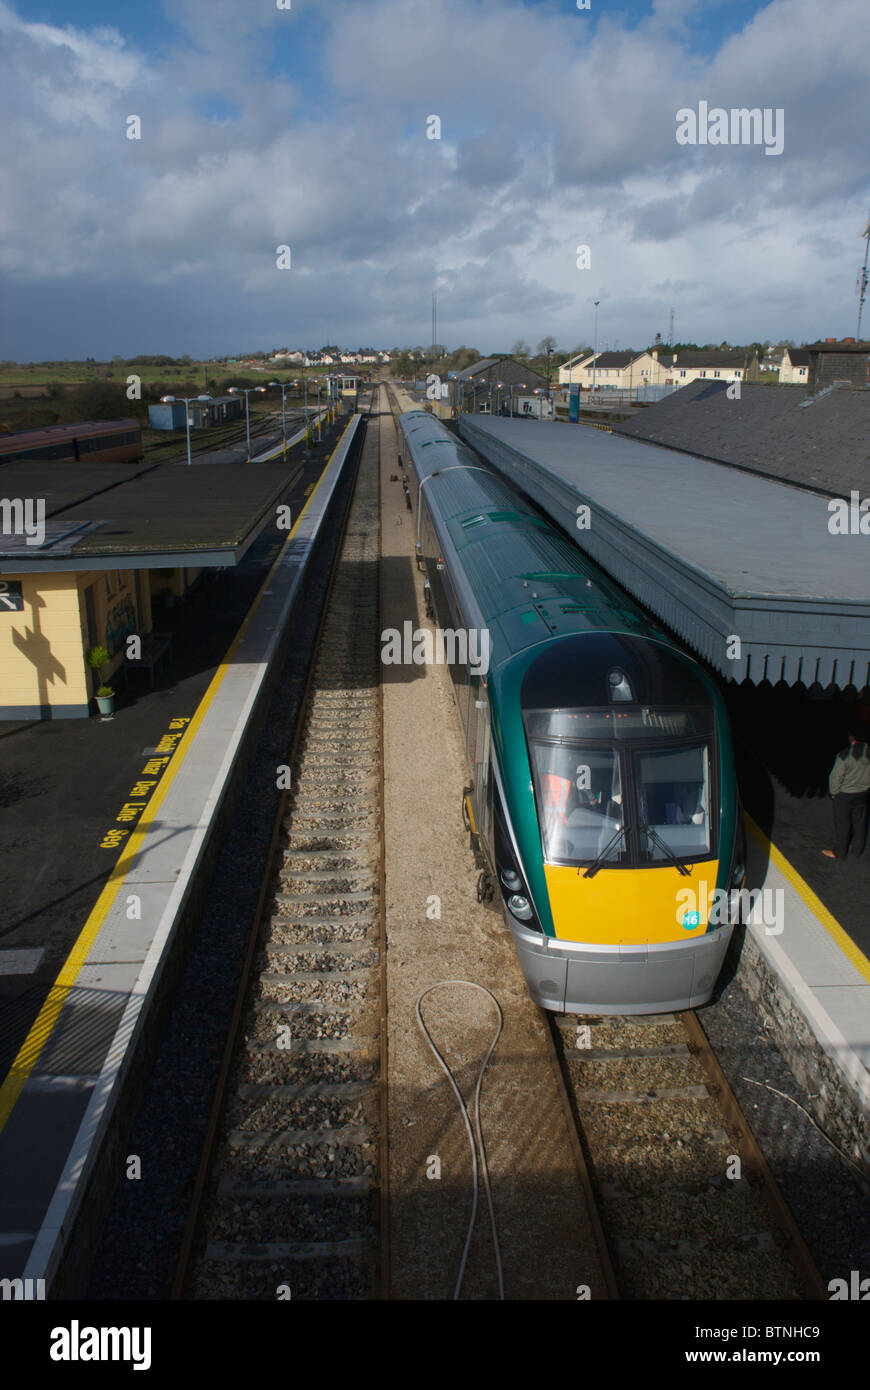 Ein Irish Rail Zug stehen auf dem Bahnsteig am Bahnhof Claremorris, Co. Mayo, Irland Stockfoto